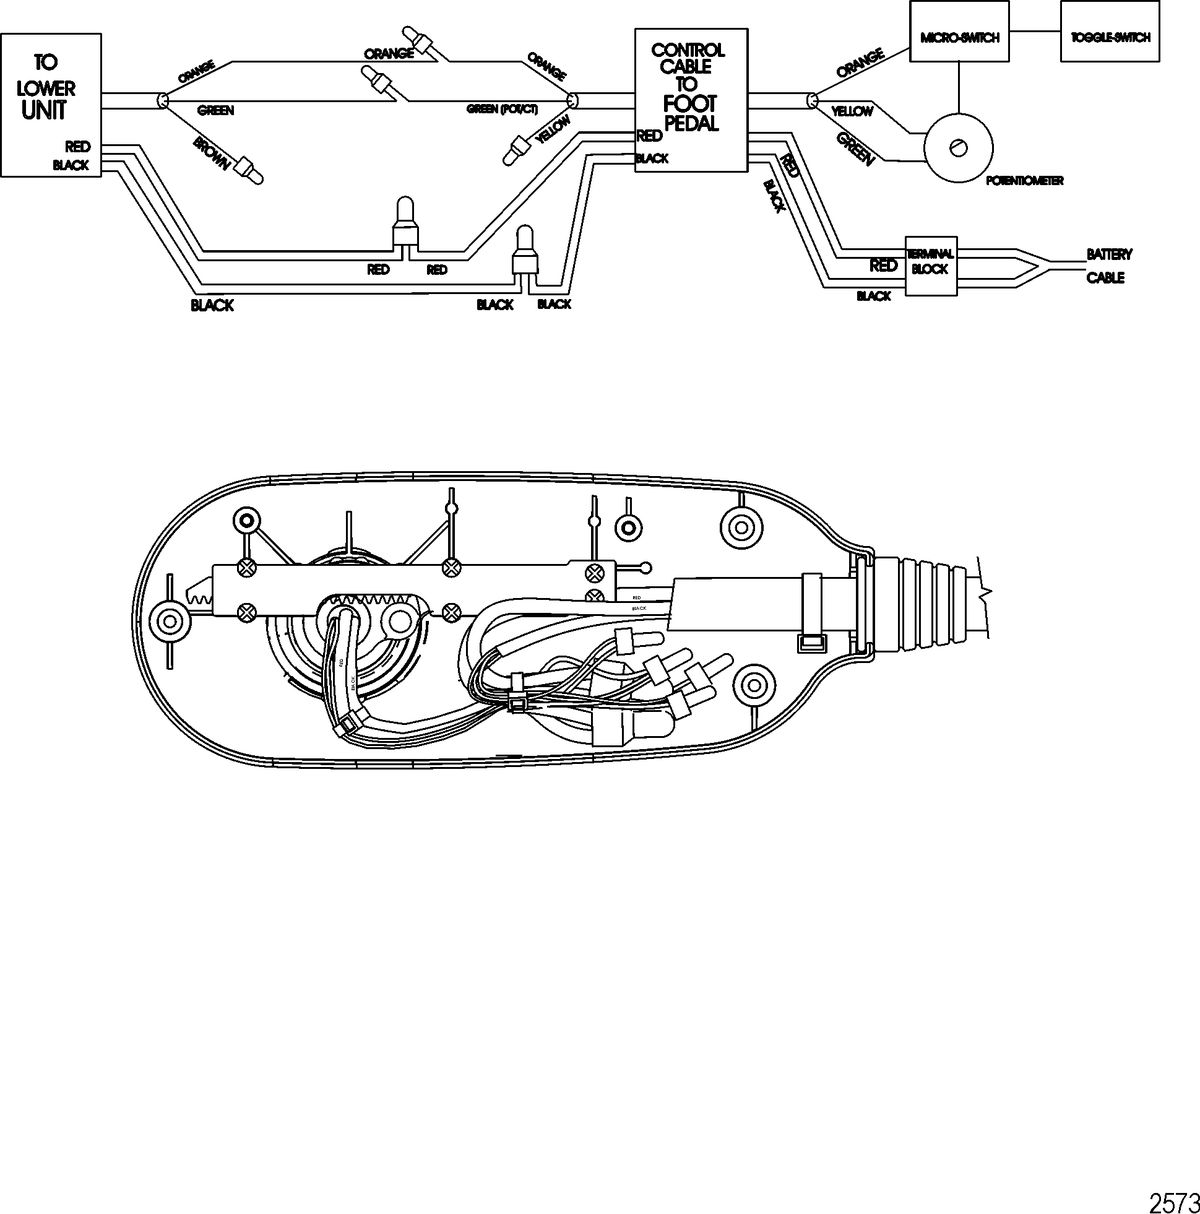 TROLLING MOTOR MOTORGUIDE BRUTE SERIES Wire Diagram(Brute 70 Digital) (24 Volt)